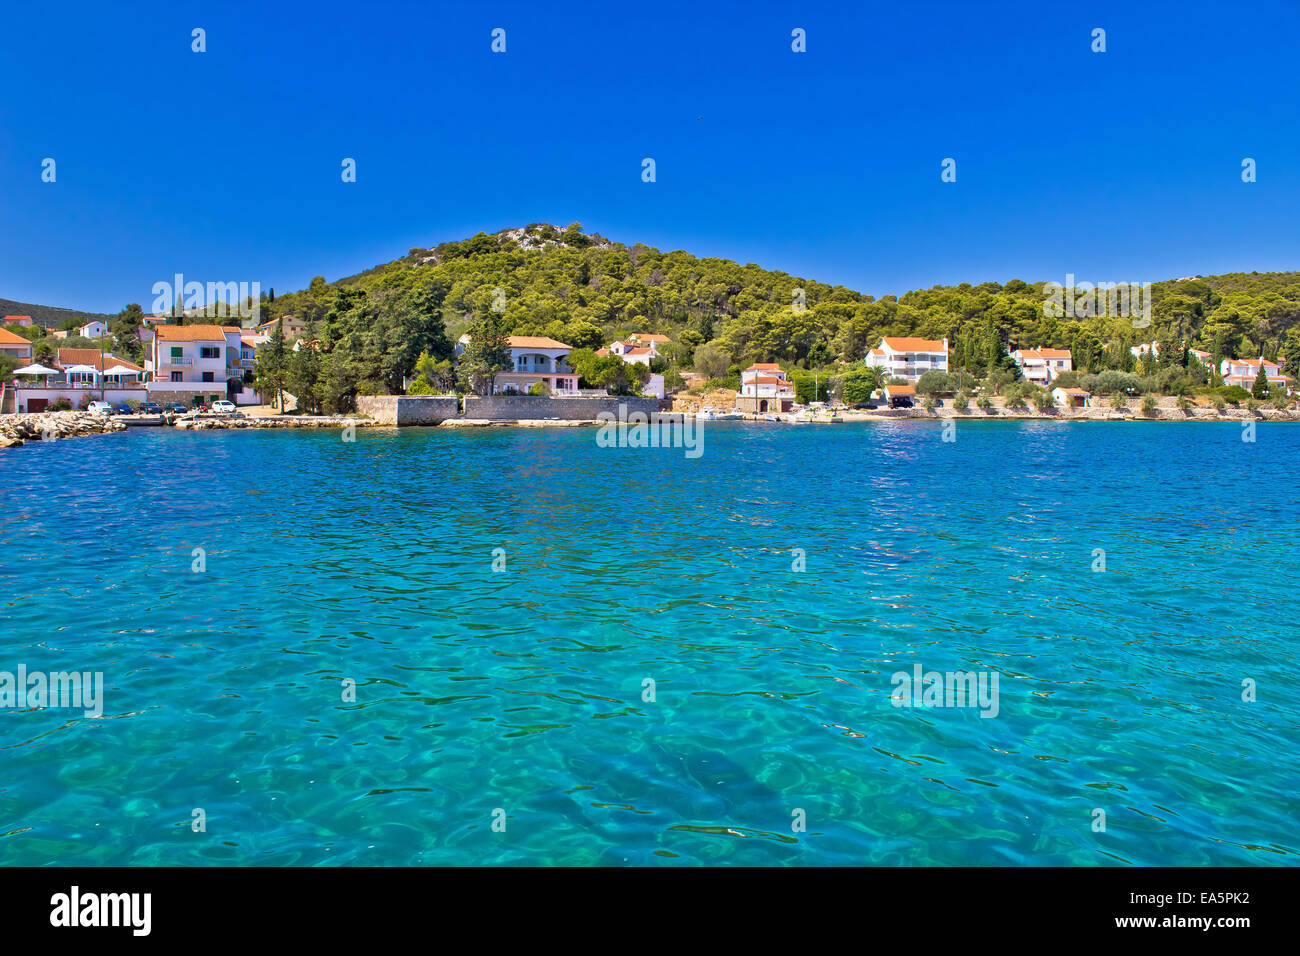 Island of Ugljan turquoise coast Stock Photo